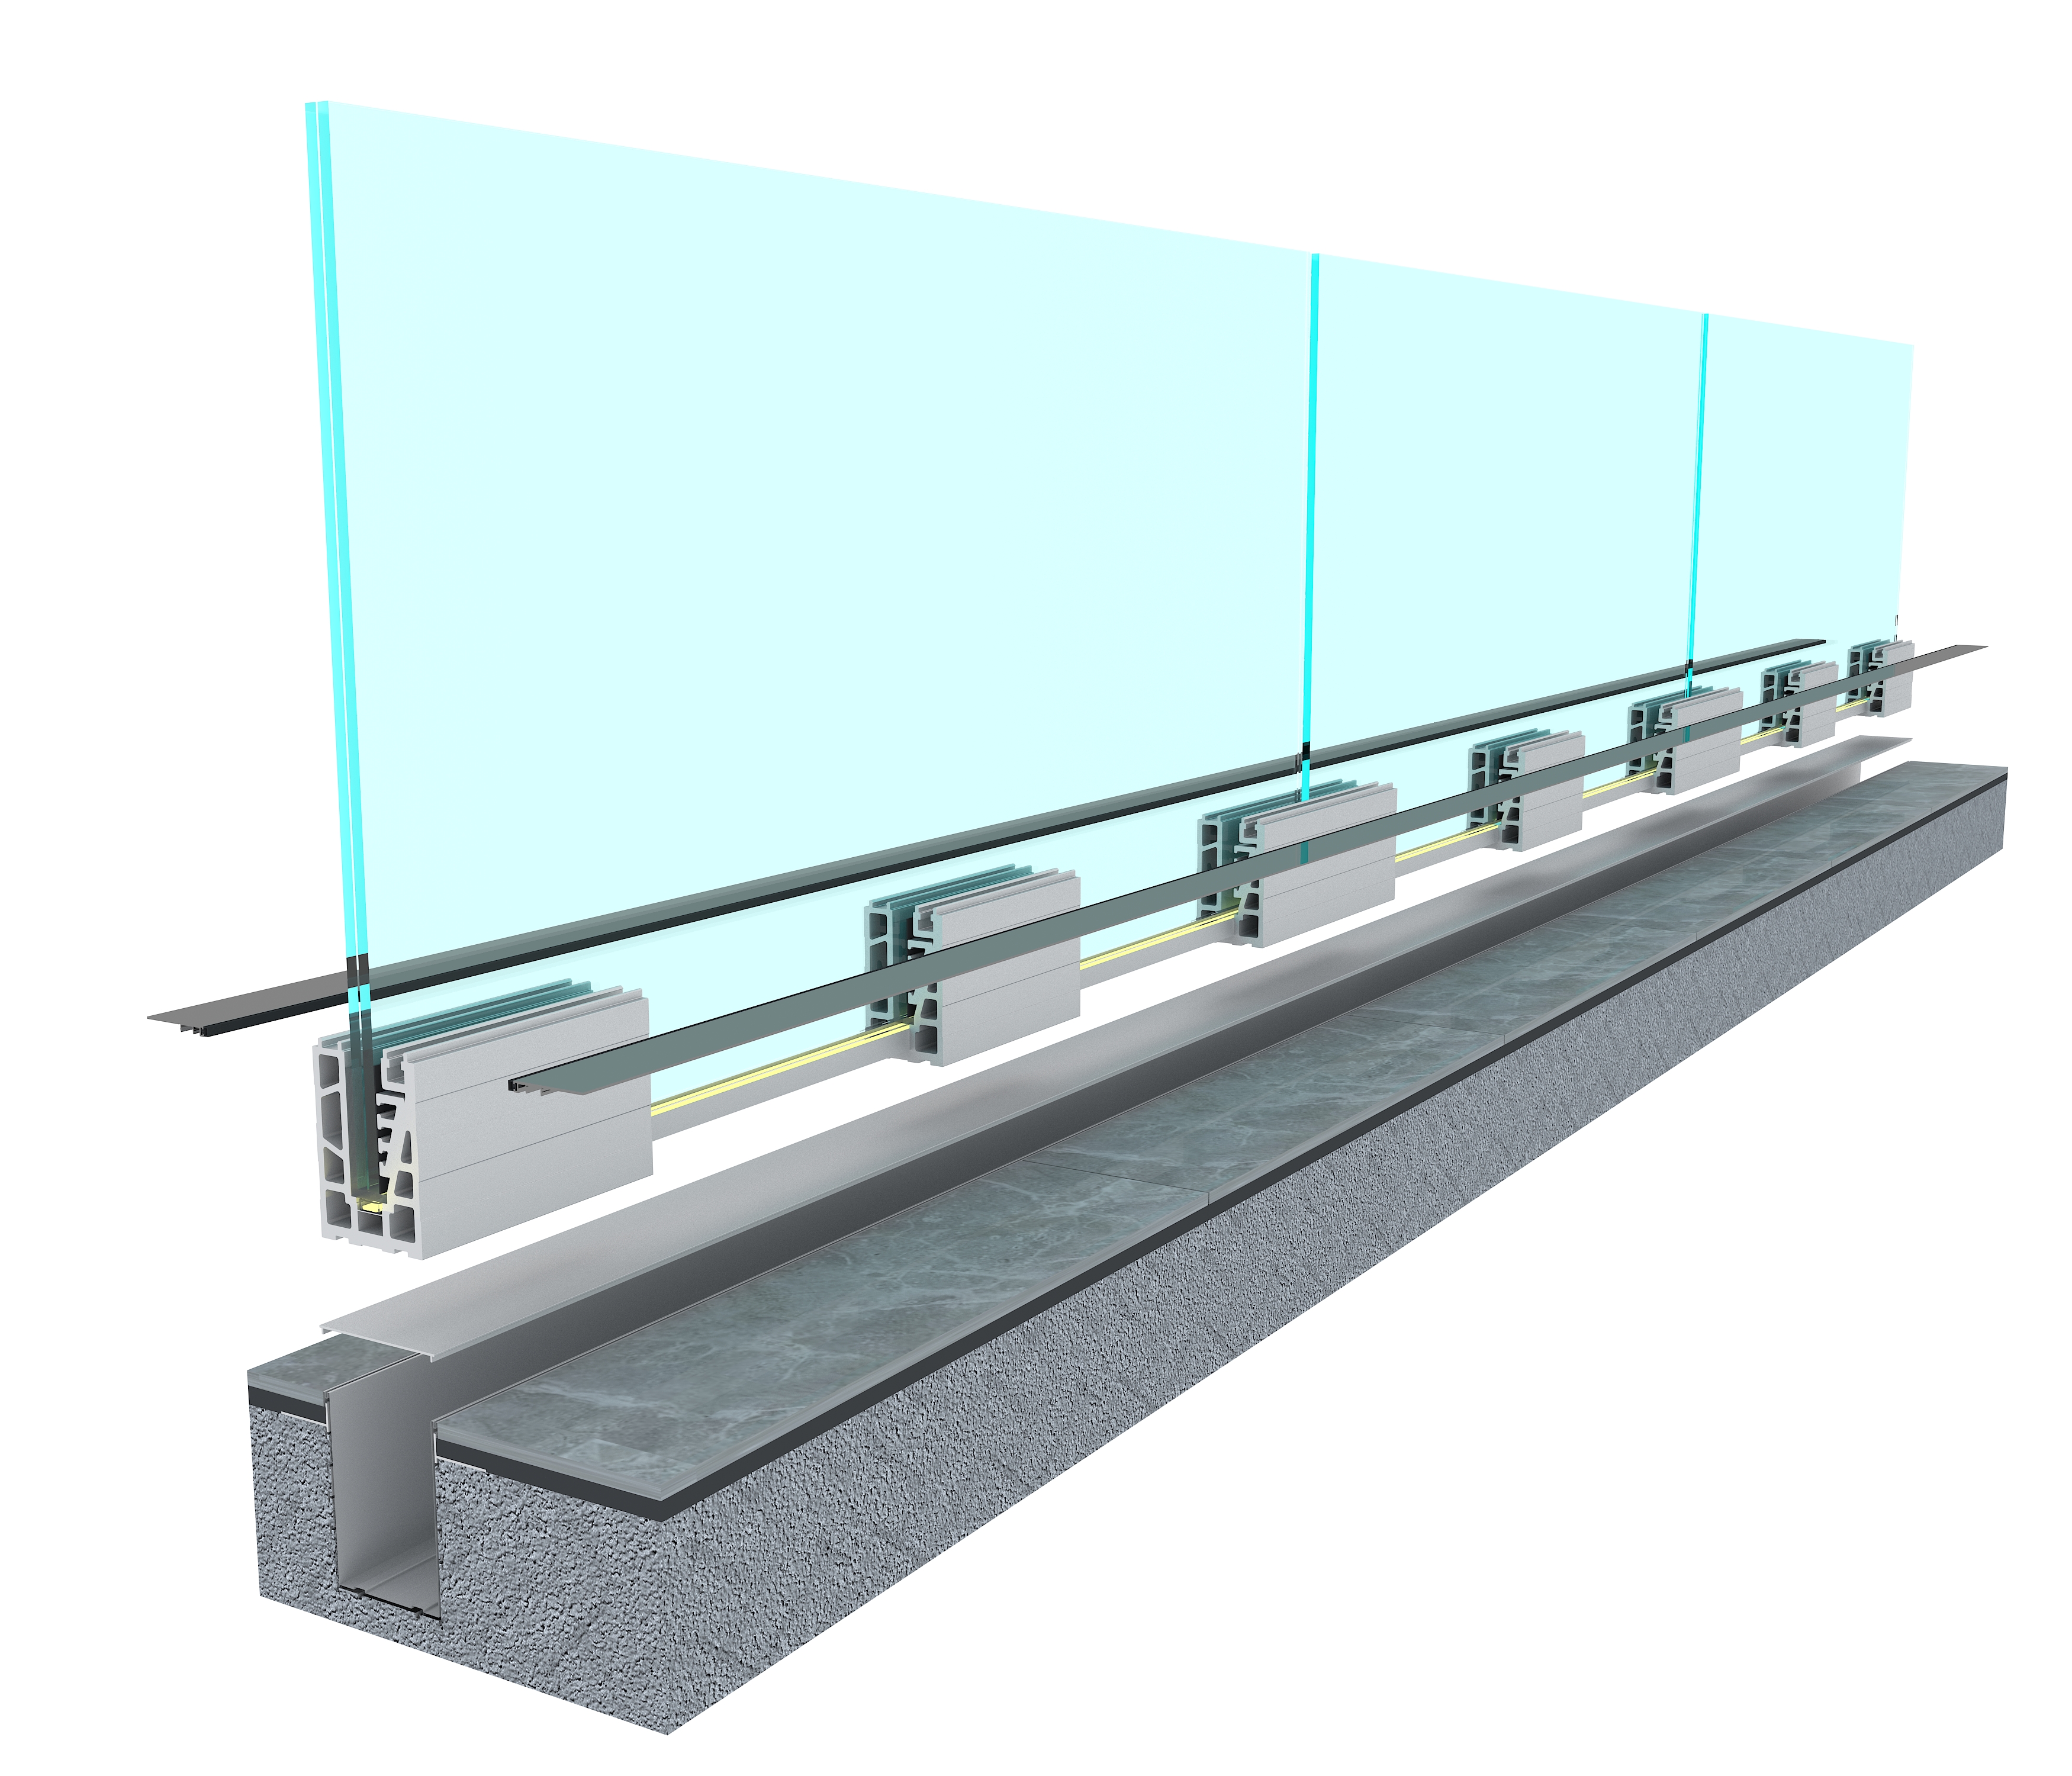 Segmenttoepassing van alle glazen balustradesystemen in de vloer